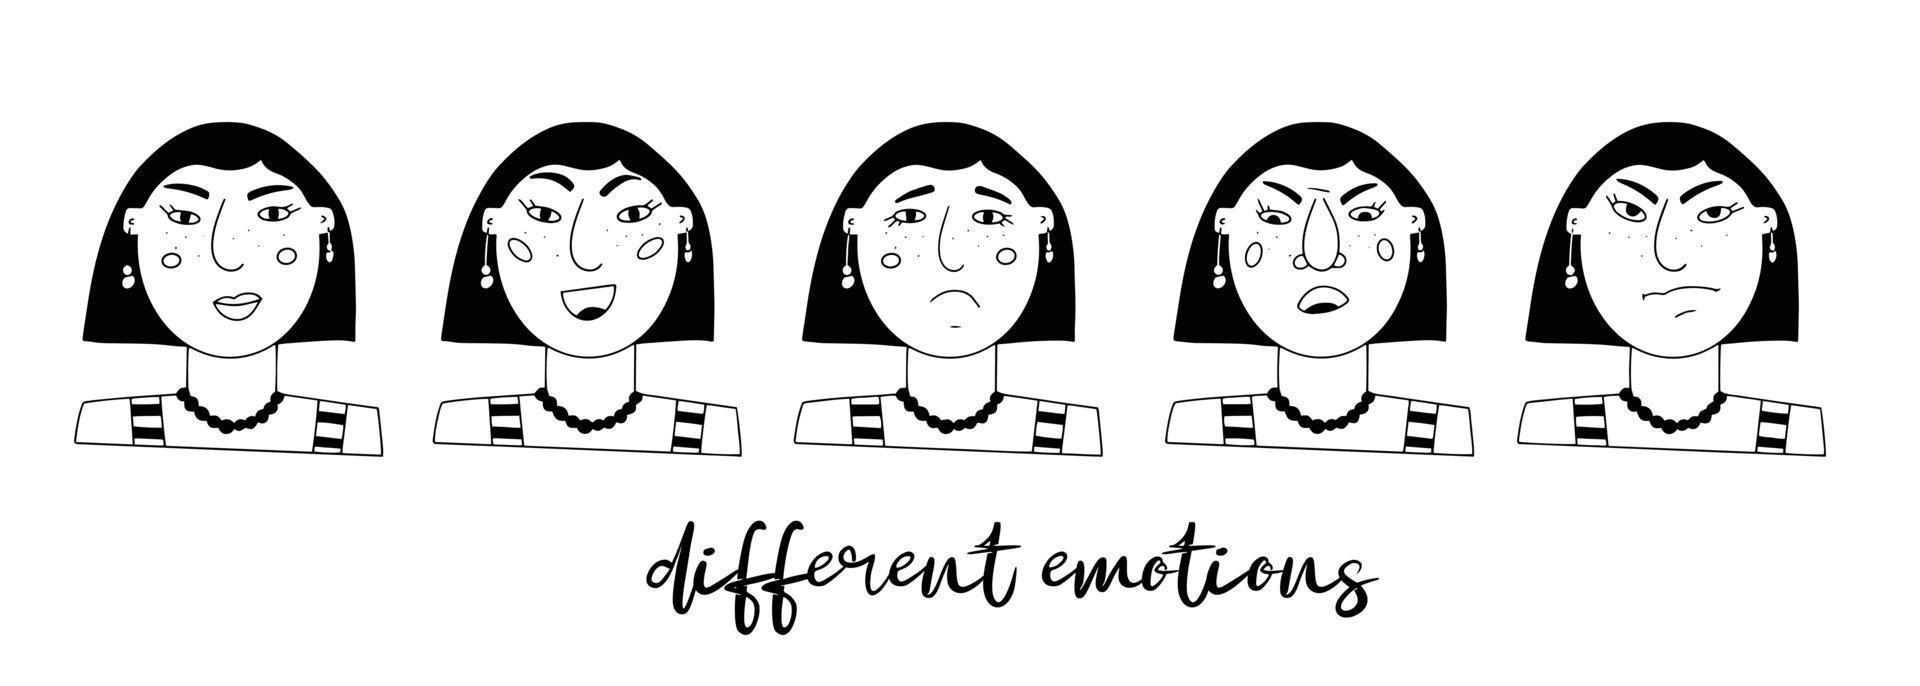 conjunto de vetores de retratos femininos. personagem minimalista engraçado dos desenhos animados com diferentes emoções e humores. medo, tristeza, alegria, surpresa. avatar para redes sociais